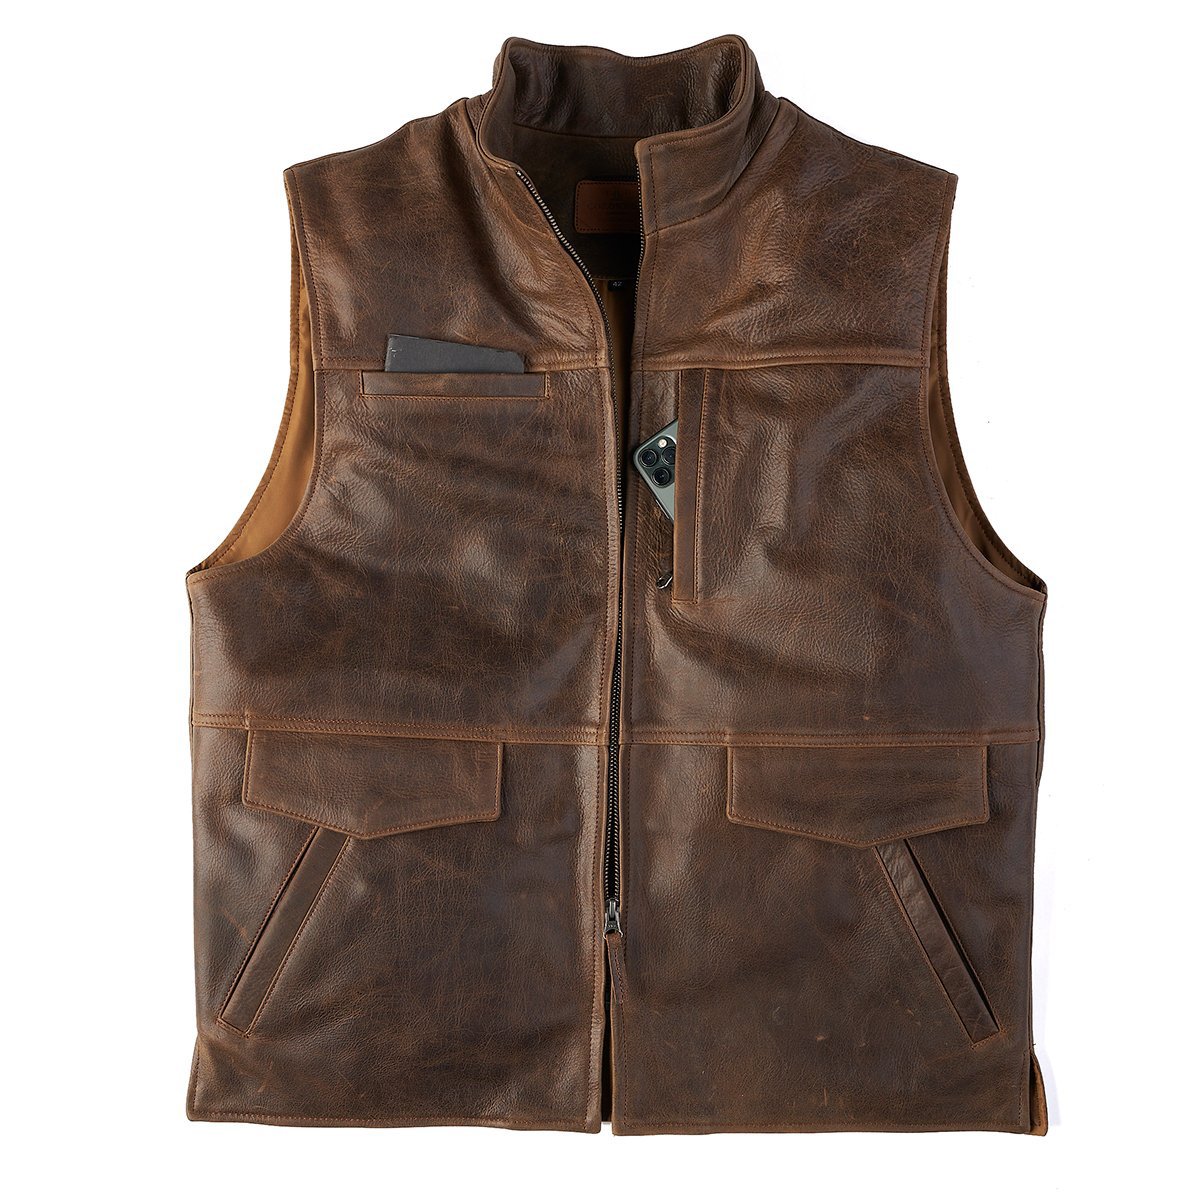 Mens vintage leather vest